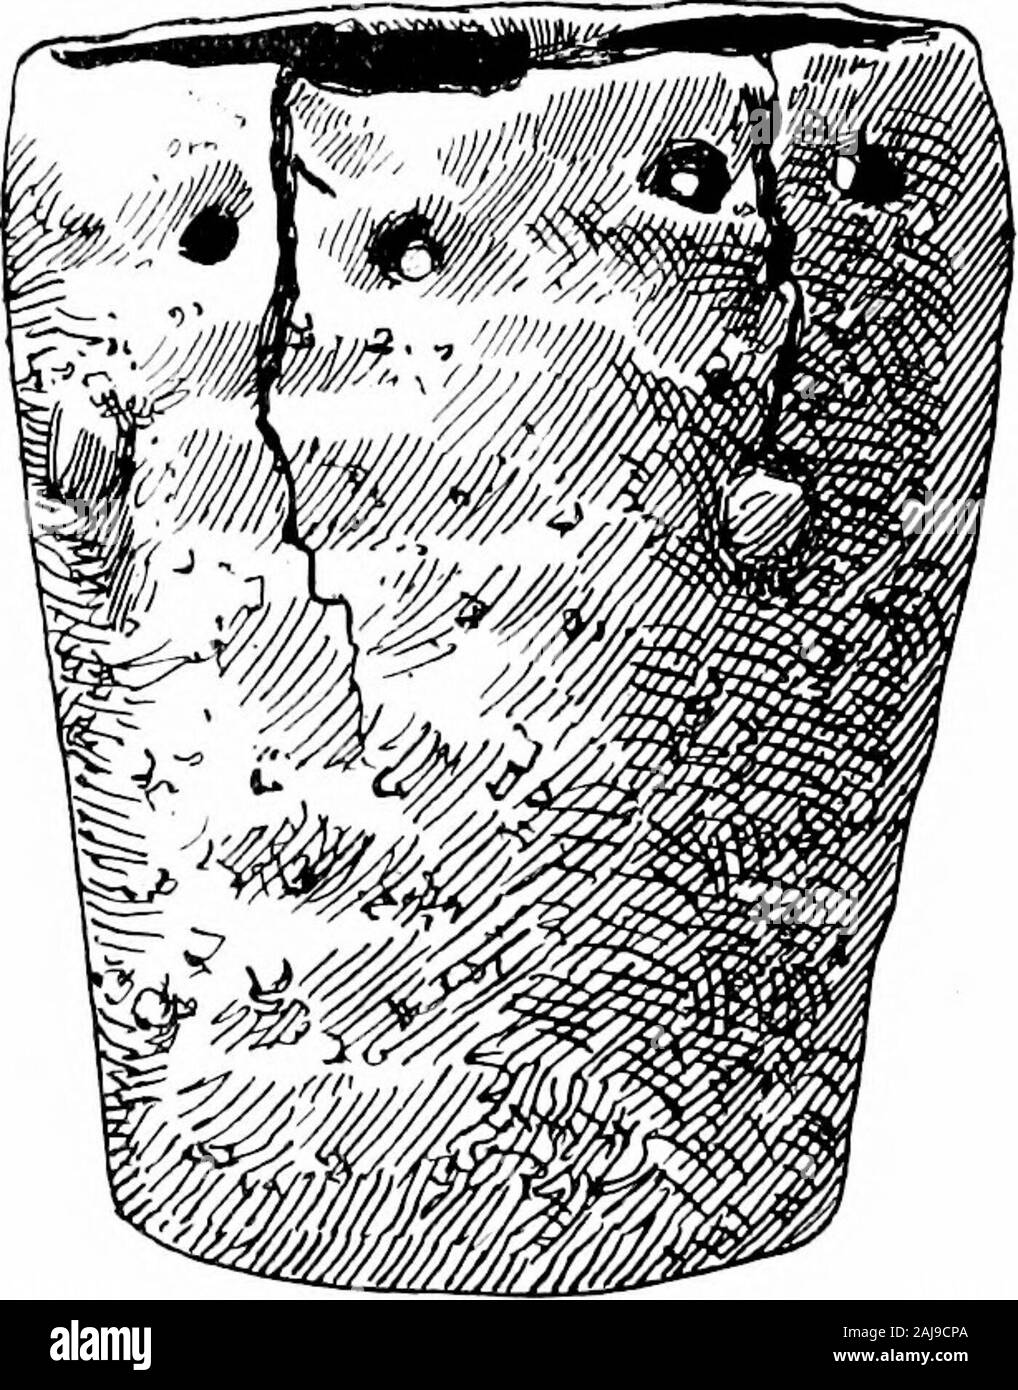 Ein Führer zu den Antiquitäten aus der Bronzezeit in der Abteilung der Britischen und mittelalterliches Antiquitäten. gh und 16 Fuß von Osten nach Westen. In dieser Masse waren foundlarge Urnen mit Abdeckungen offlint oder Sandstein, andsmaller Schiffe, indicatingnearly 50 Bestattungen hier. Eine kleine Serie von Essen - Schiffe aus Schottland andIreland, Letztere (Platte v, 4-6), in der bestimmte Pecu - liarities, und darunter eine schüsselförmige Sorte (Platte V, 5 J confinedto, die Insel. Es ist so, dass die ornamentik Der periodreaches ihre höchste Entwicklung. Co.Um mehr als fiftystone cists mit verbrannte Knochen gefunden wurden Stockfoto